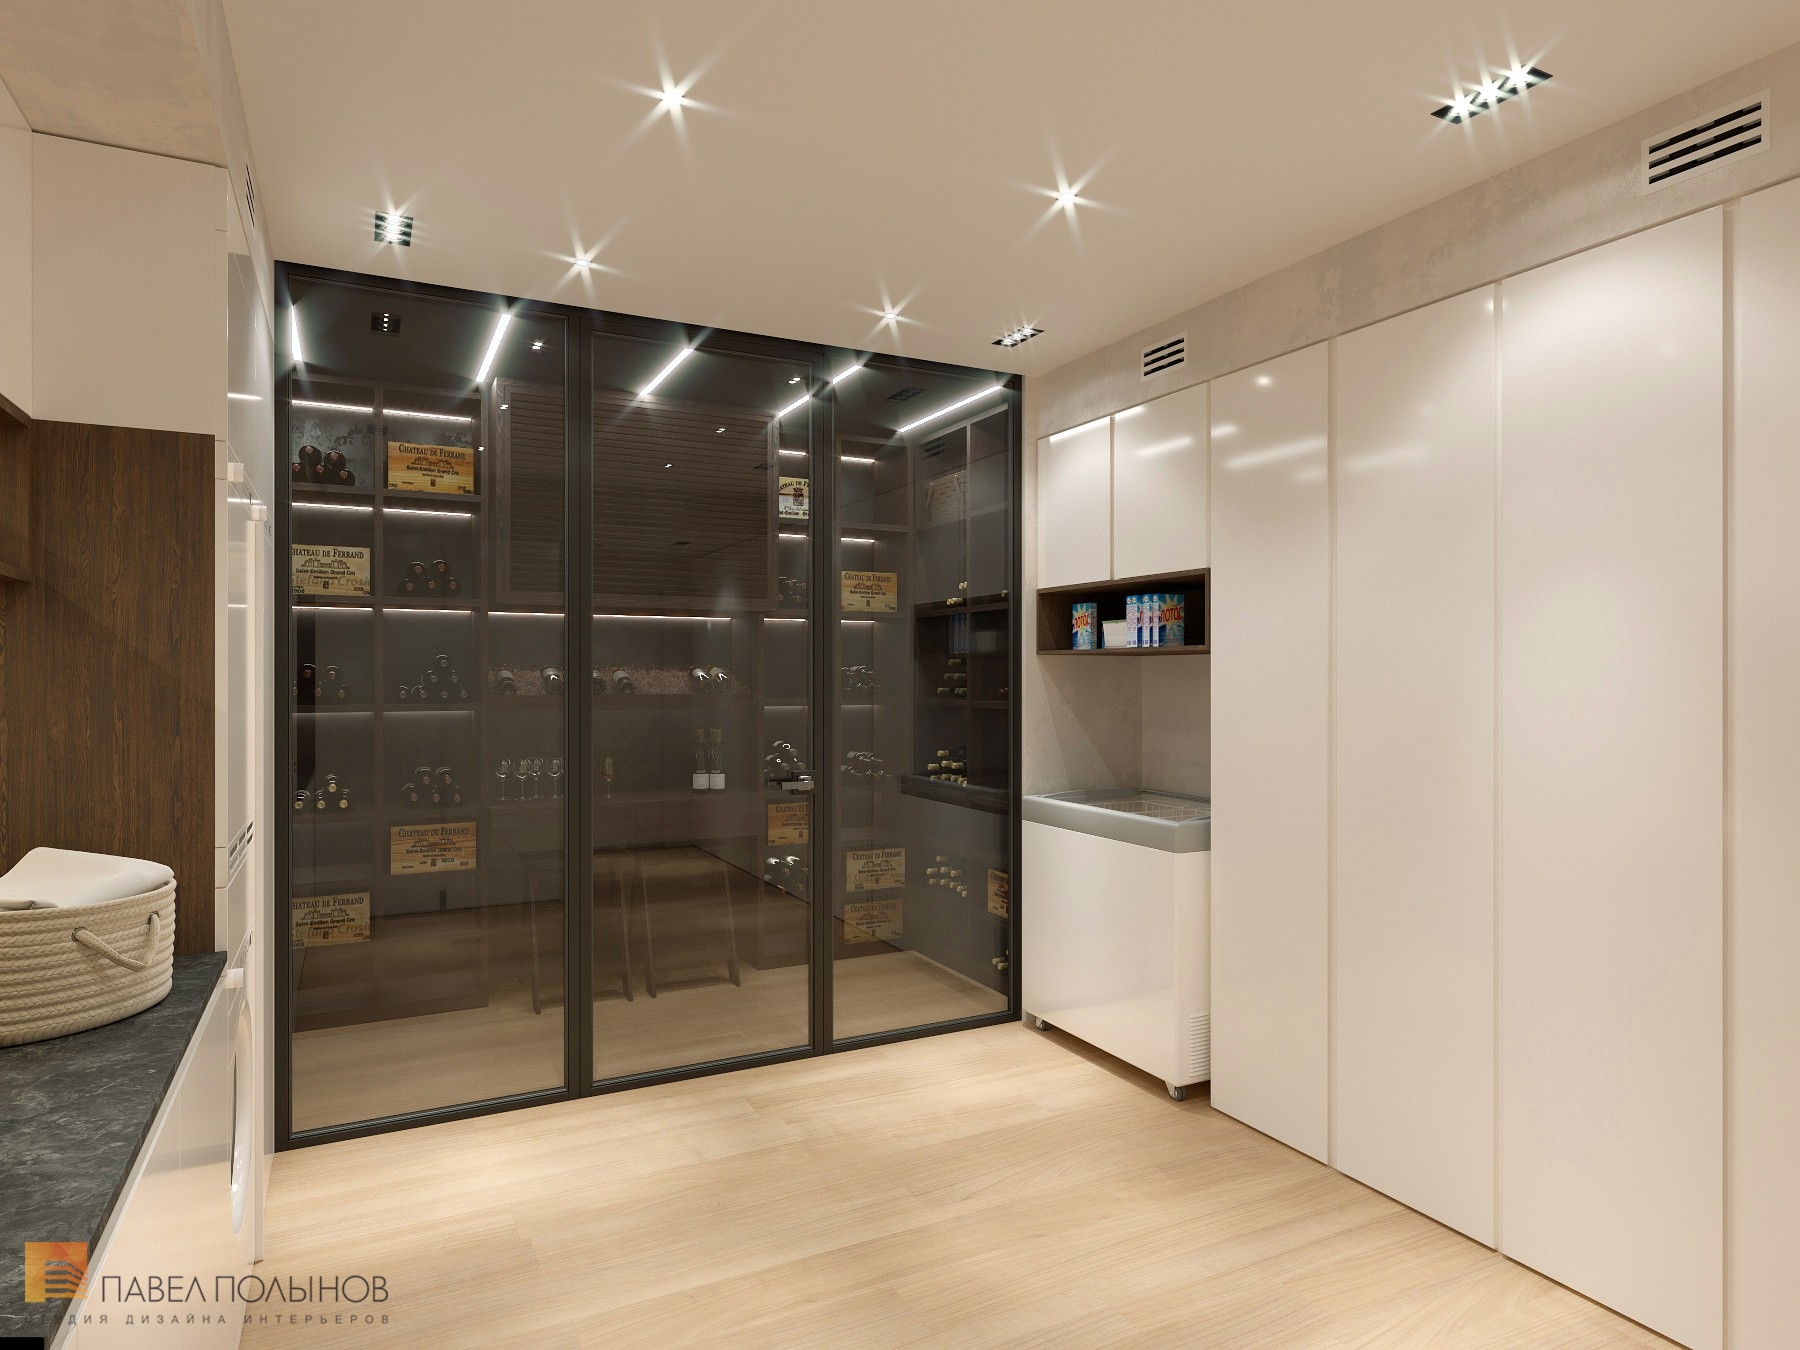 Фото дизайн интерьера хозяйственной комнаты из проекта «Интерьер дома в современном стиле, 350 кв.м.»